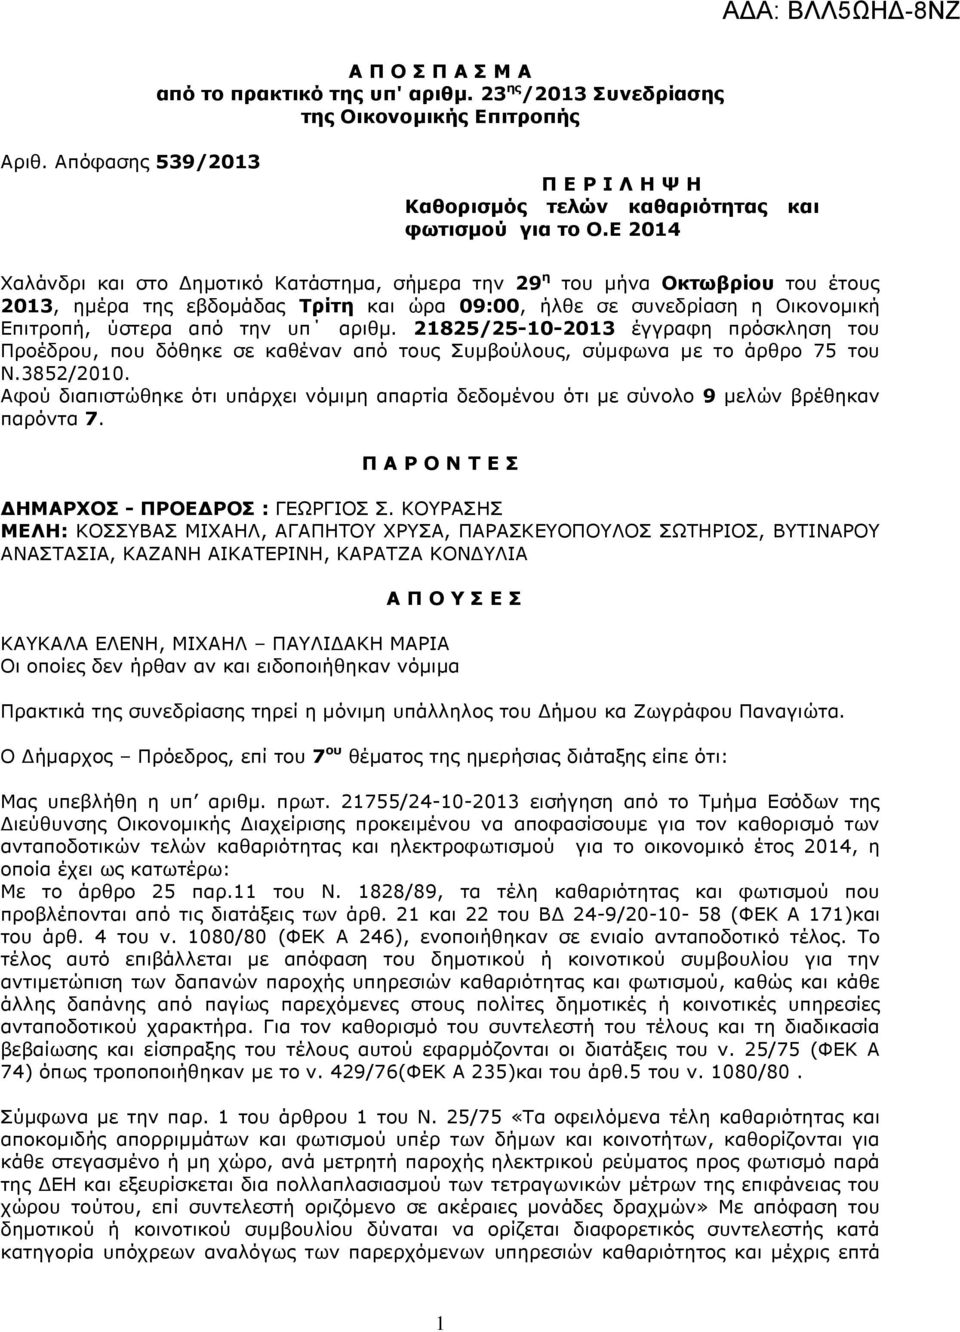 αριθµ. 21825/25-10-2013 έγγραφη πρόσκληση του Προέδρου, που δόθηκε σε καθέναν από τους Συµβούλους, σύµφωνα µε το άρθρο 75 του Ν.3852/2010.